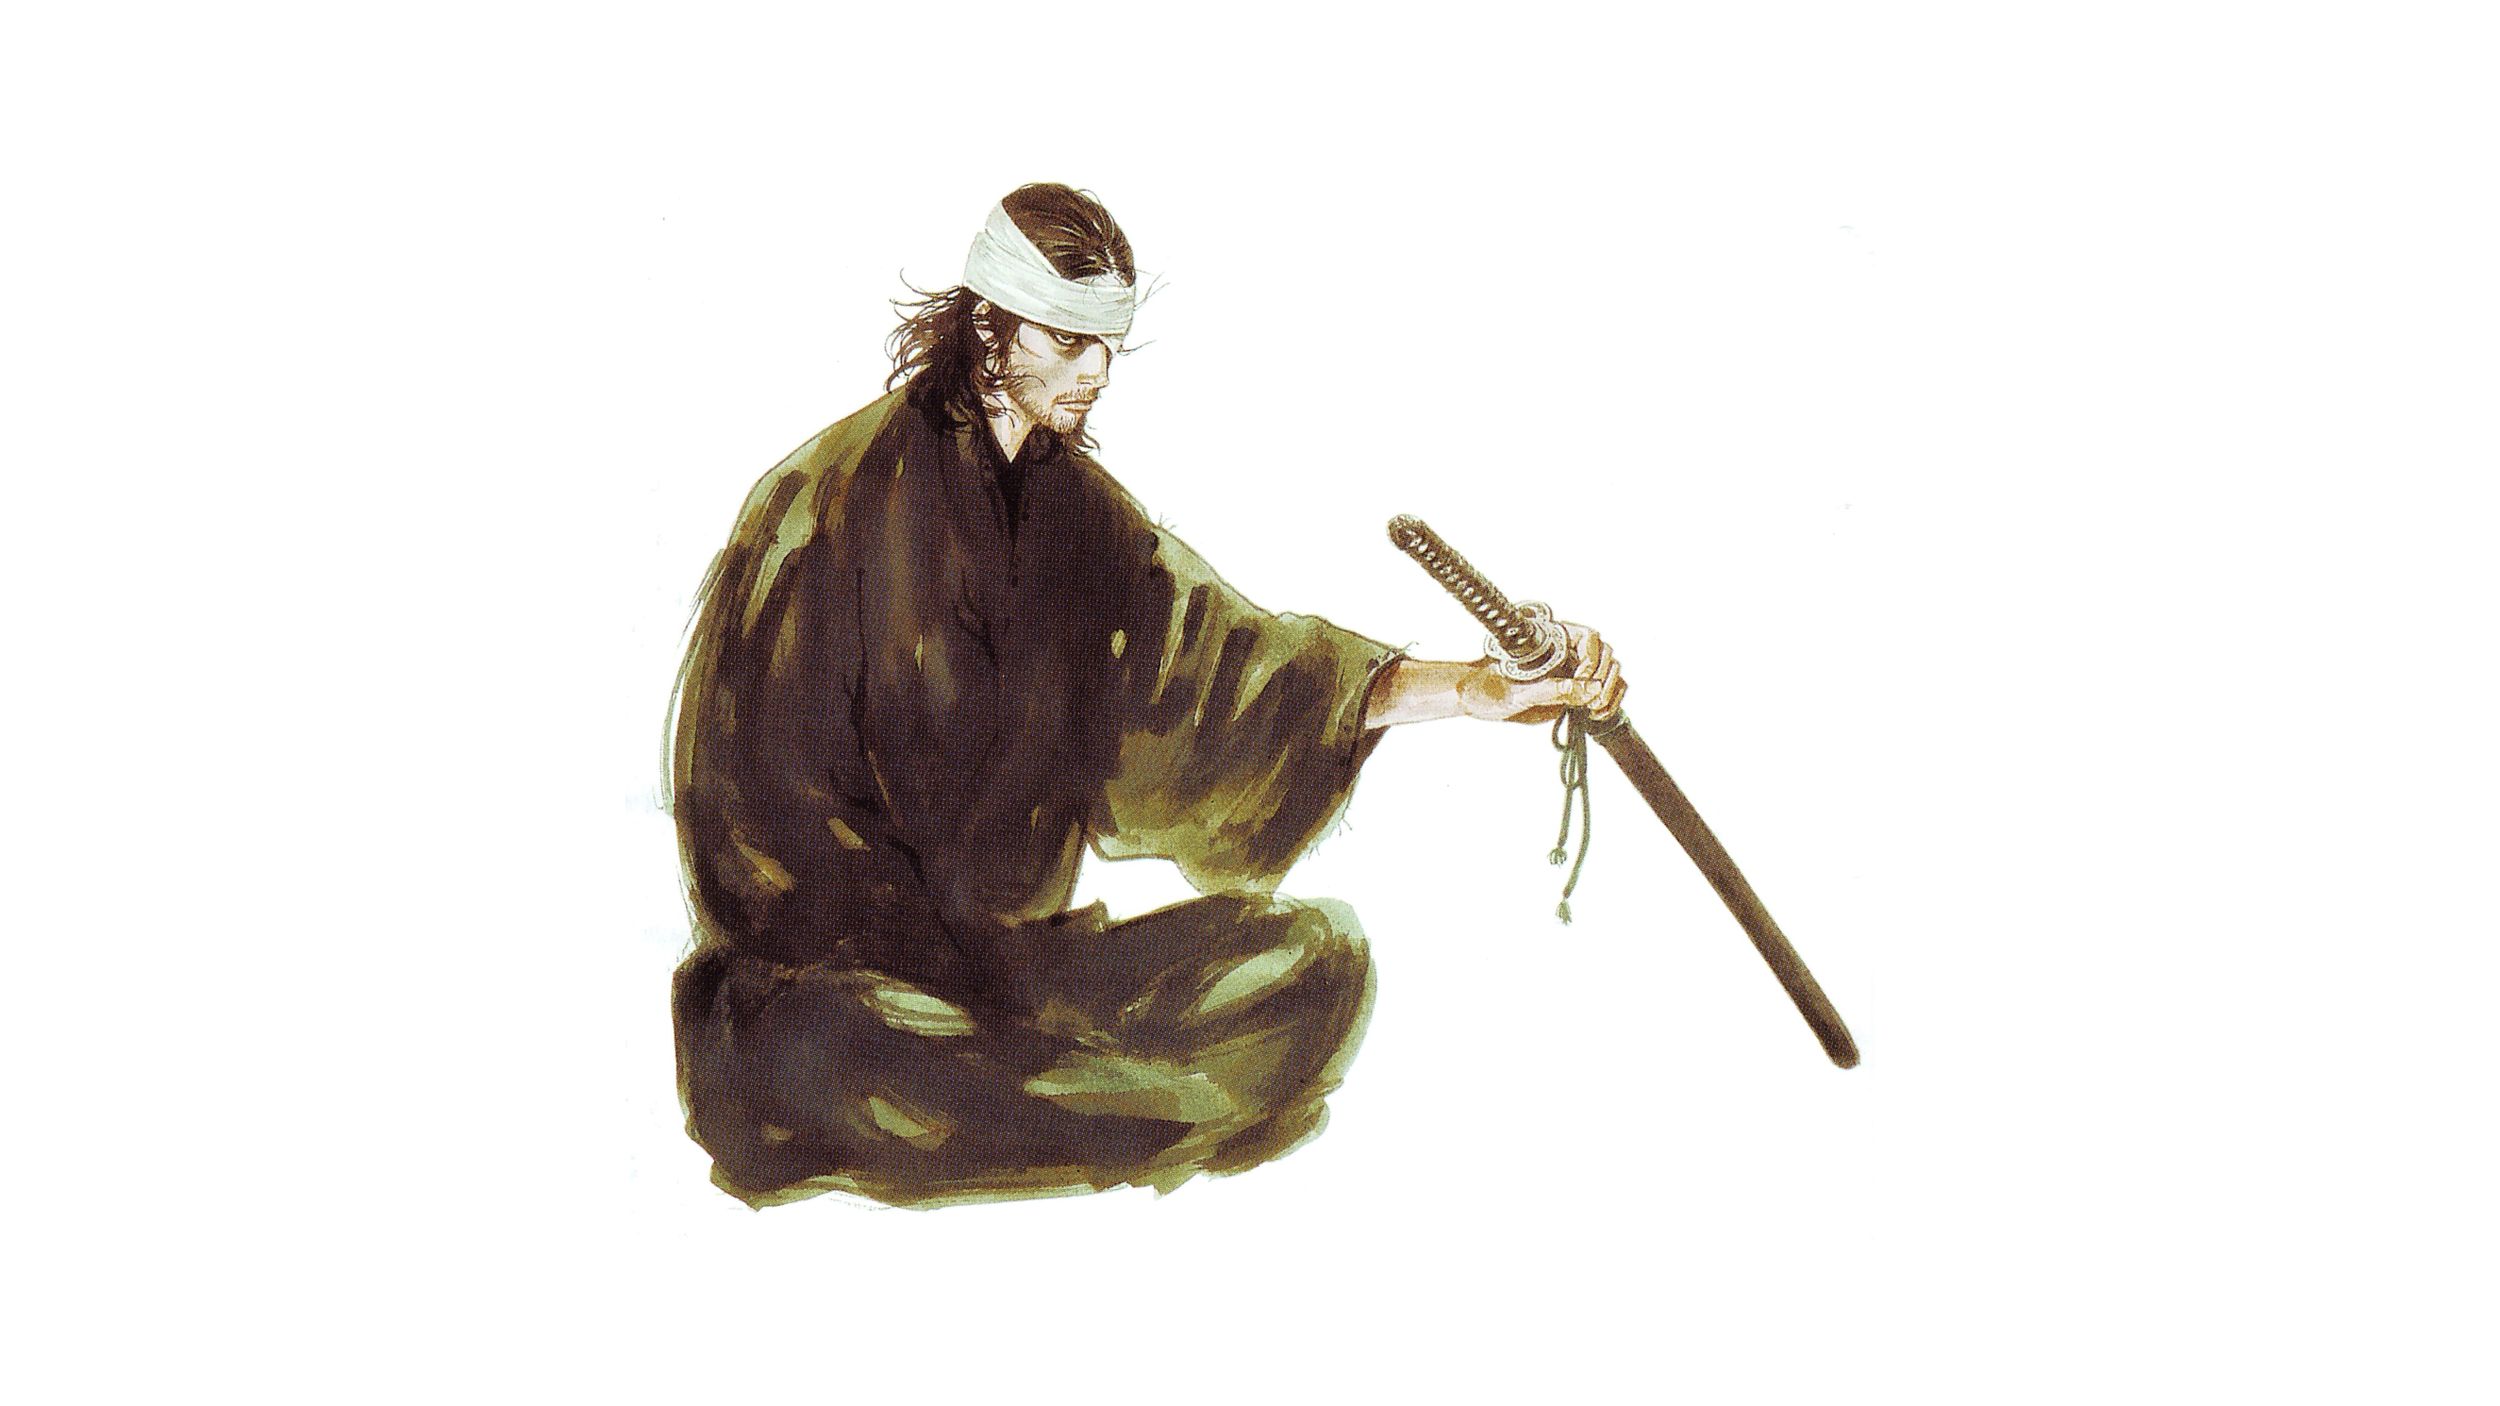 Миямото Мусаси с катаной